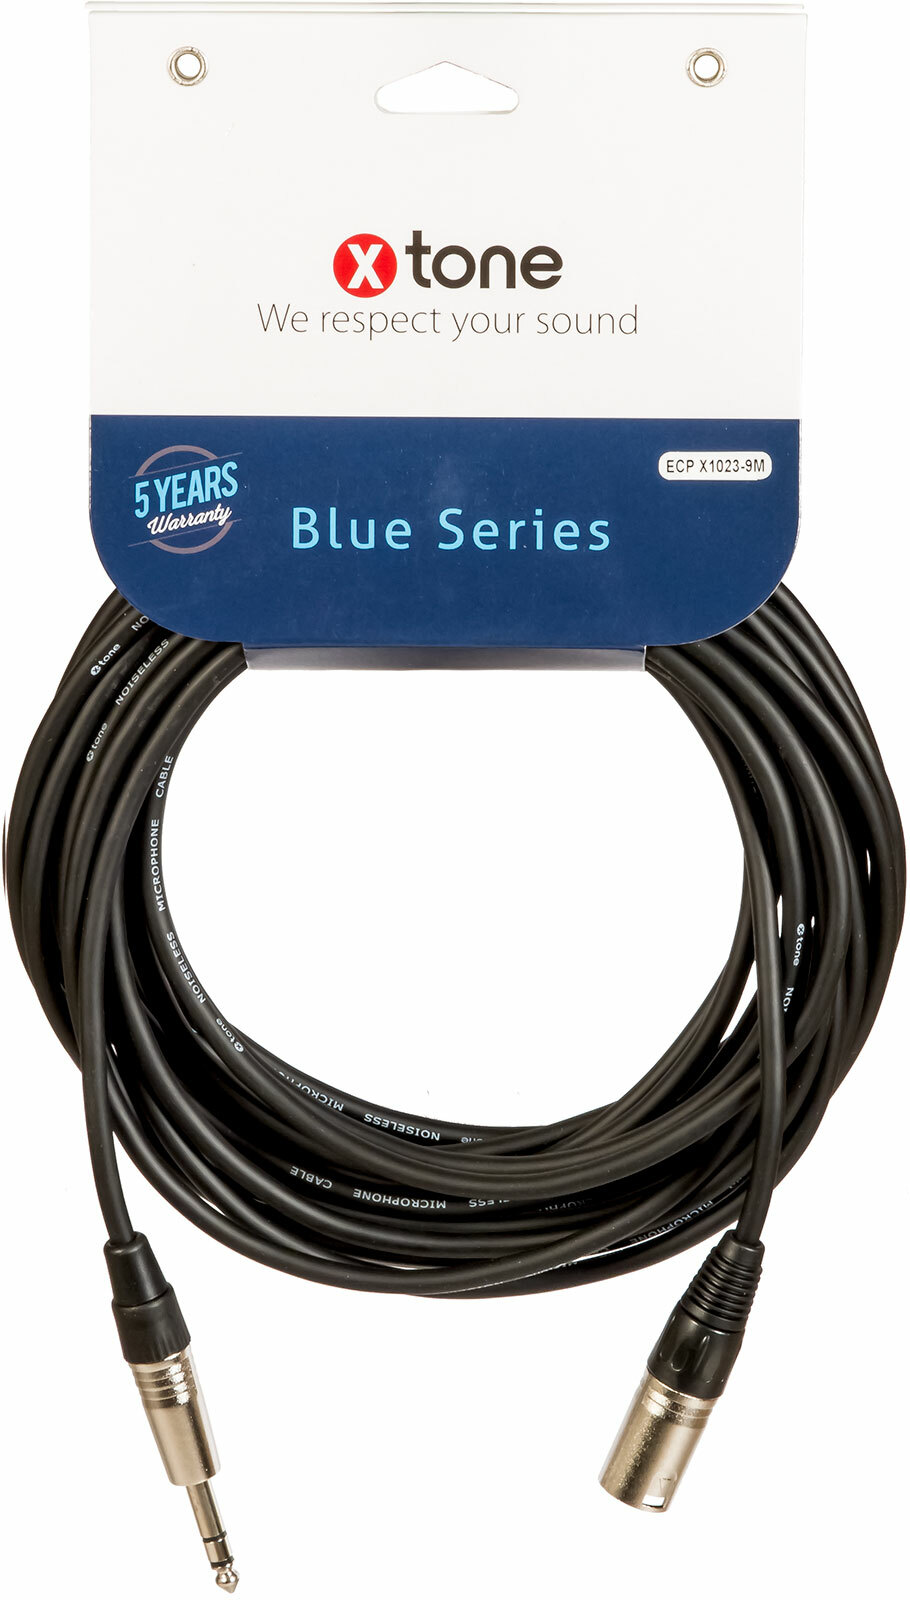 X-tone Jack St / Xlr(m) 9m Blue Series (x1023-9m) - Cable - Main picture